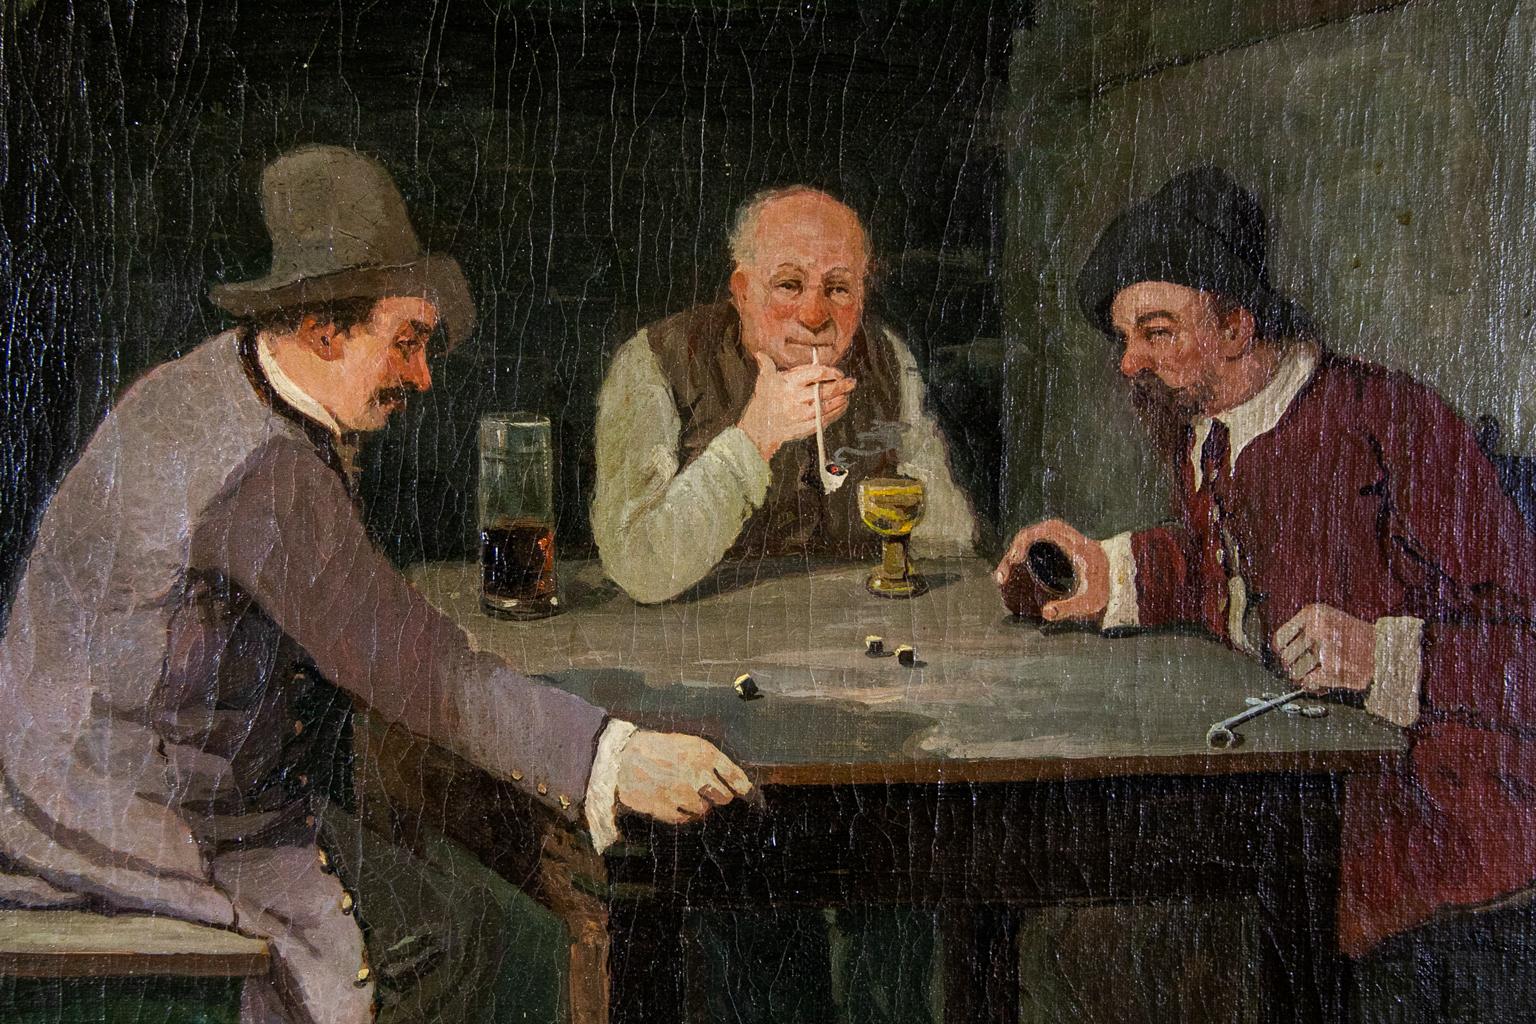 ölgemälde einer Wirtshausszene aus dem 19. Jahrhundert von L. Wittkowski, Berlin, die Männer spielen Würfel, trinken Bier und rauchen Tonpfeifen.